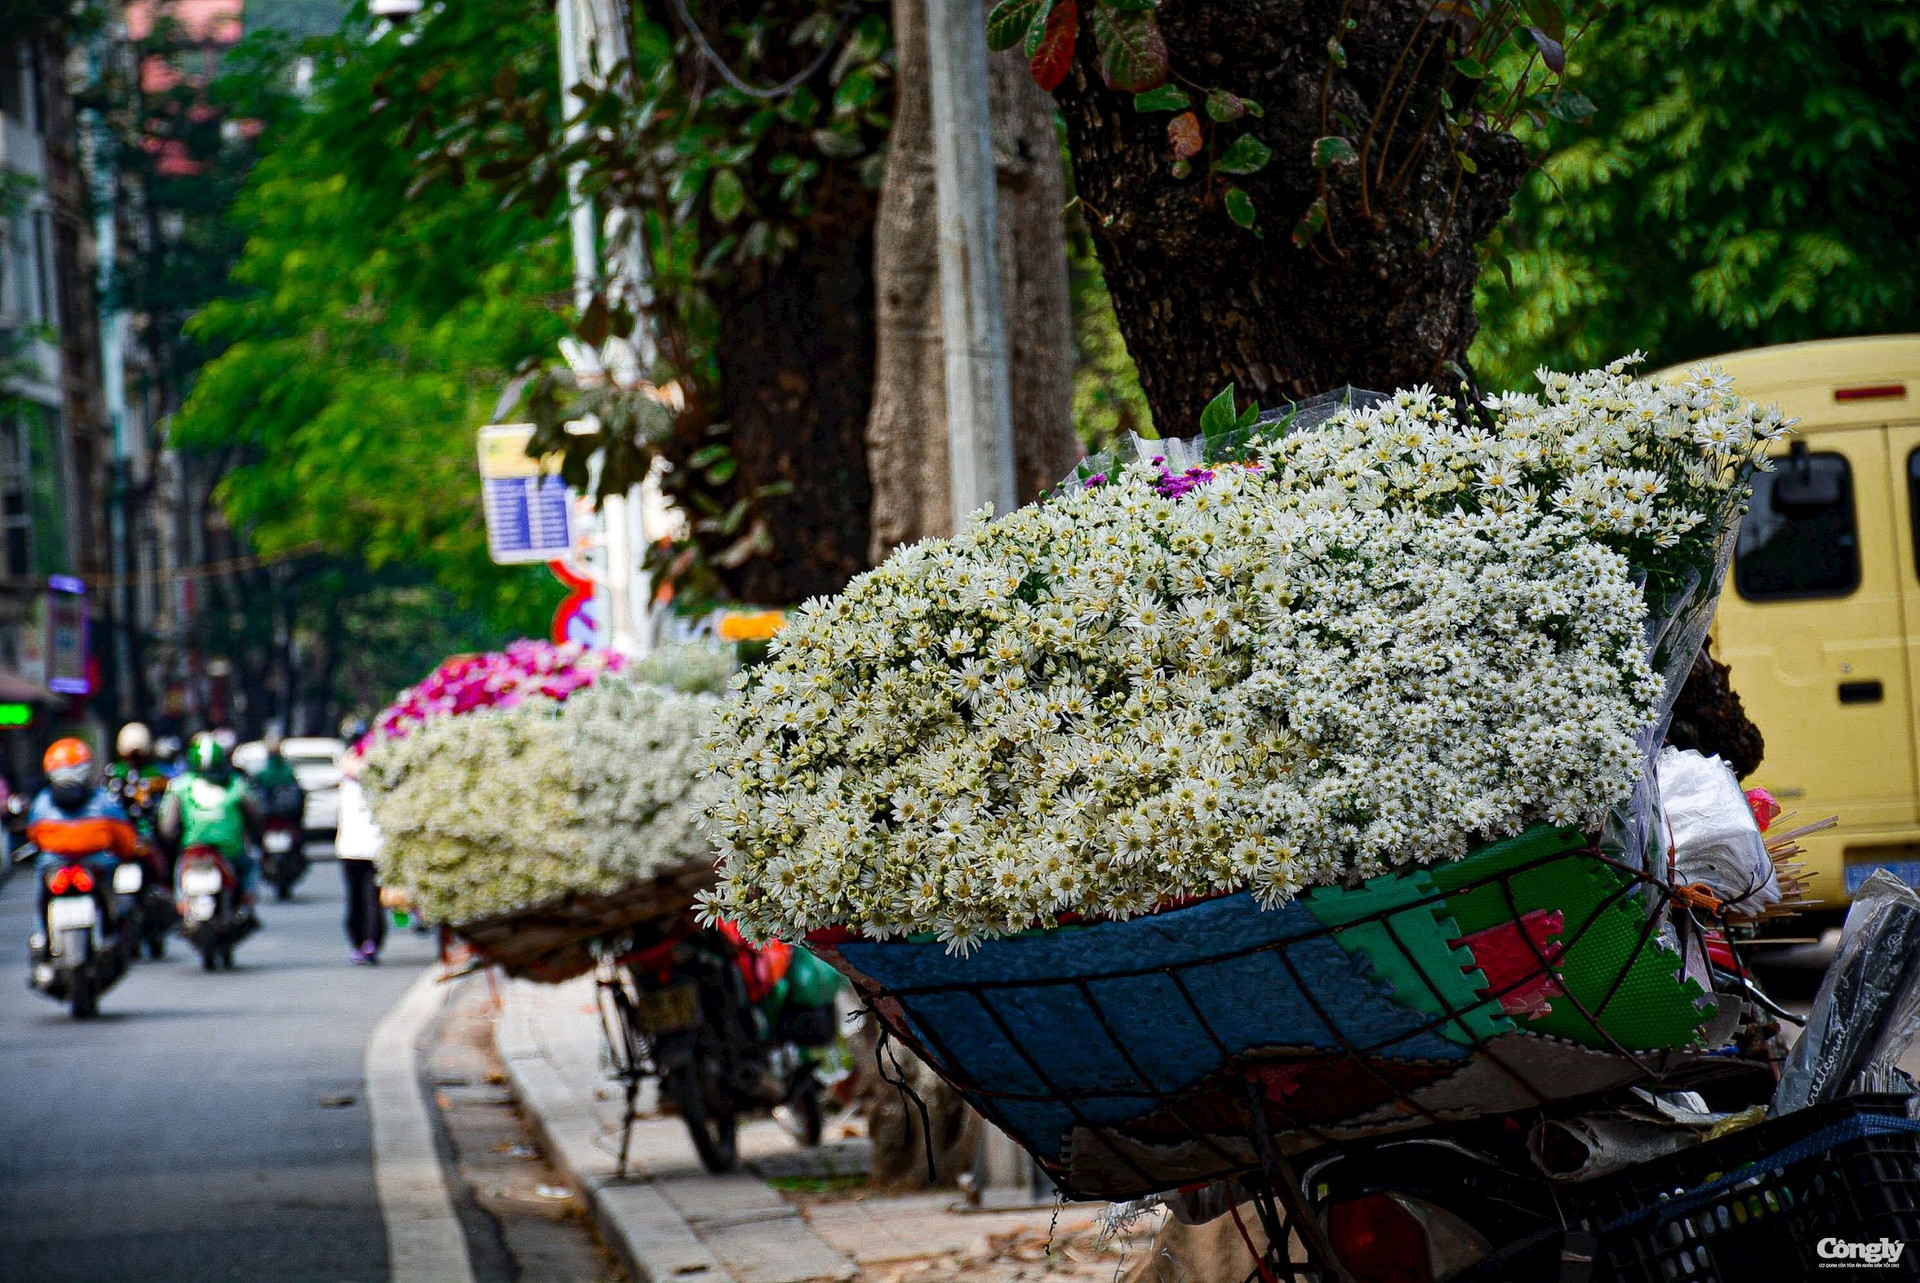 Hãy chiêm ngưỡng vẻ đẹp tuyệt vời của loài hoa Cúc hoạ mi Hà Nội trong ảnh. Với những đóa cúc trắng sạch và hương thơm dịu nhẹ, chắc chắn bạn sẽ cảm thấy sự thư giãn và hạnh phúc.